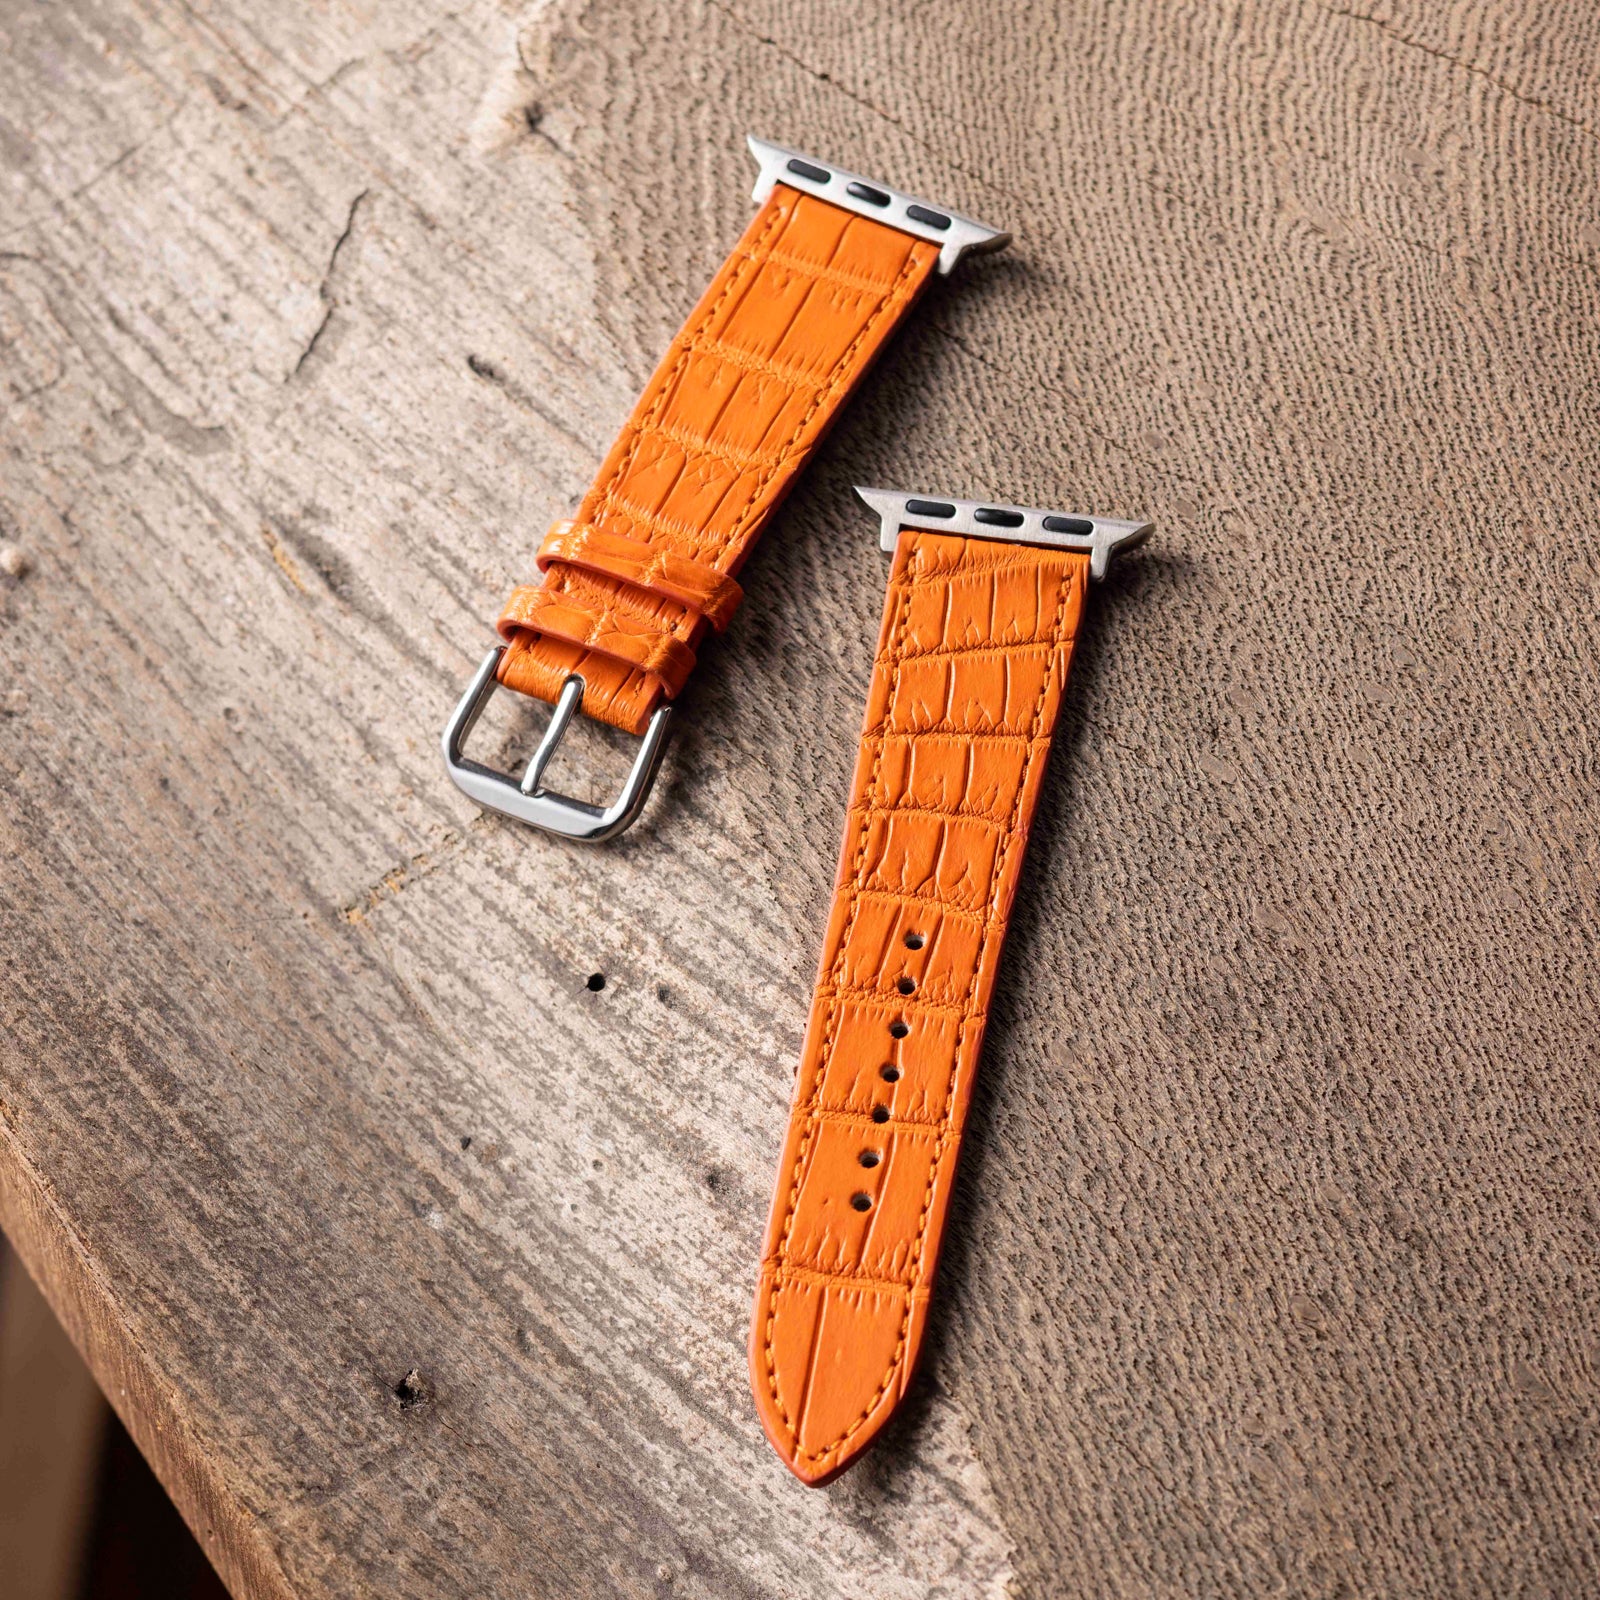 Apple Watch leather belt (44MM/40MM) crocodile